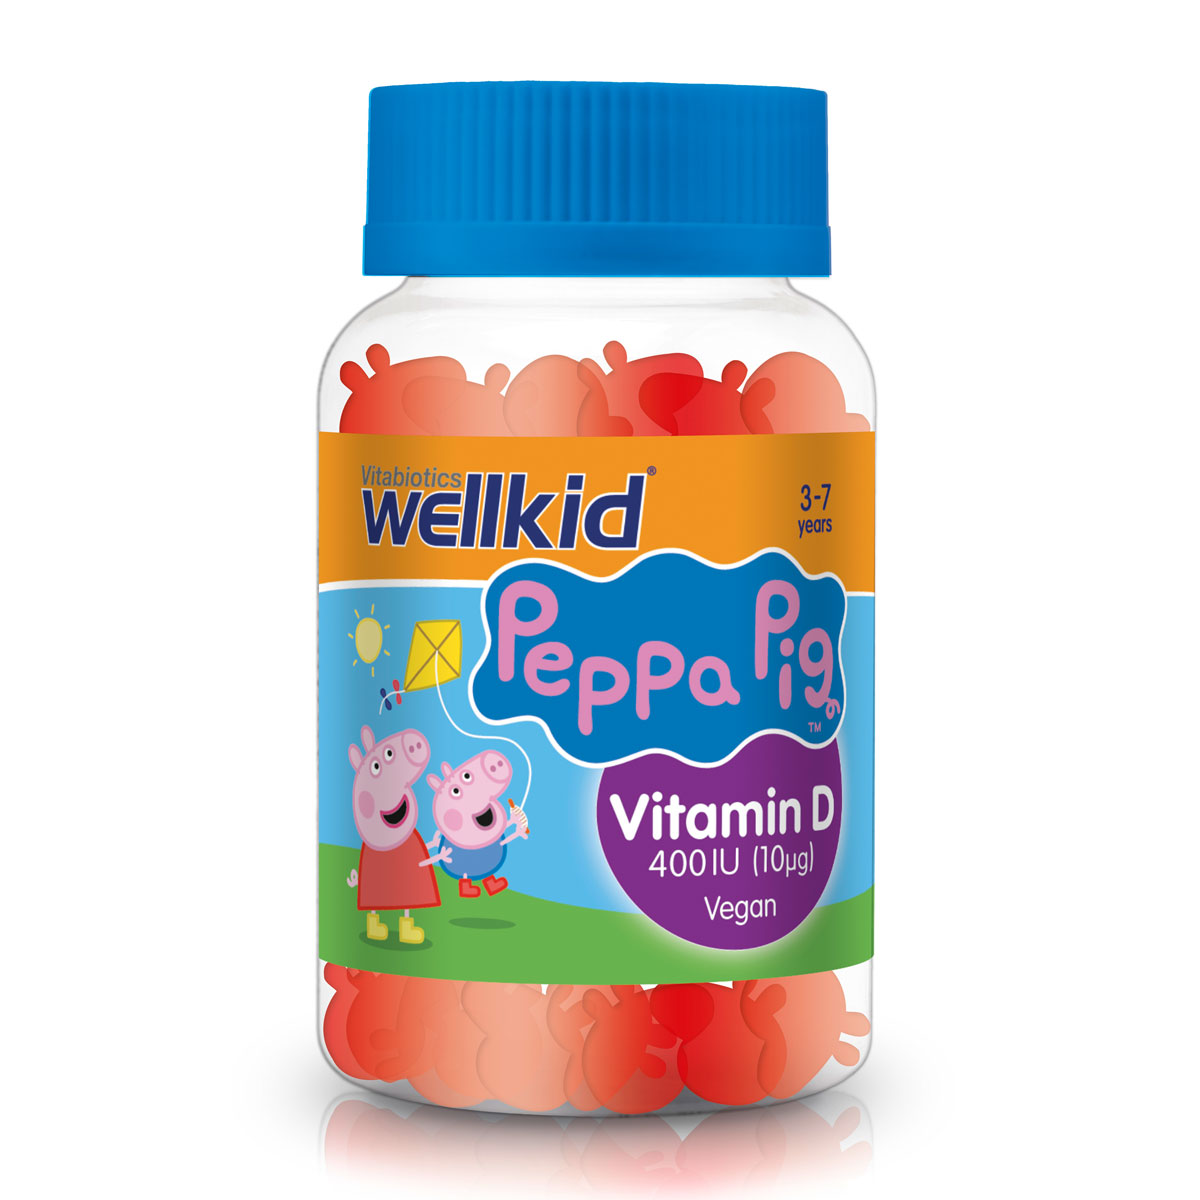 Peppa Pig Vitamin D